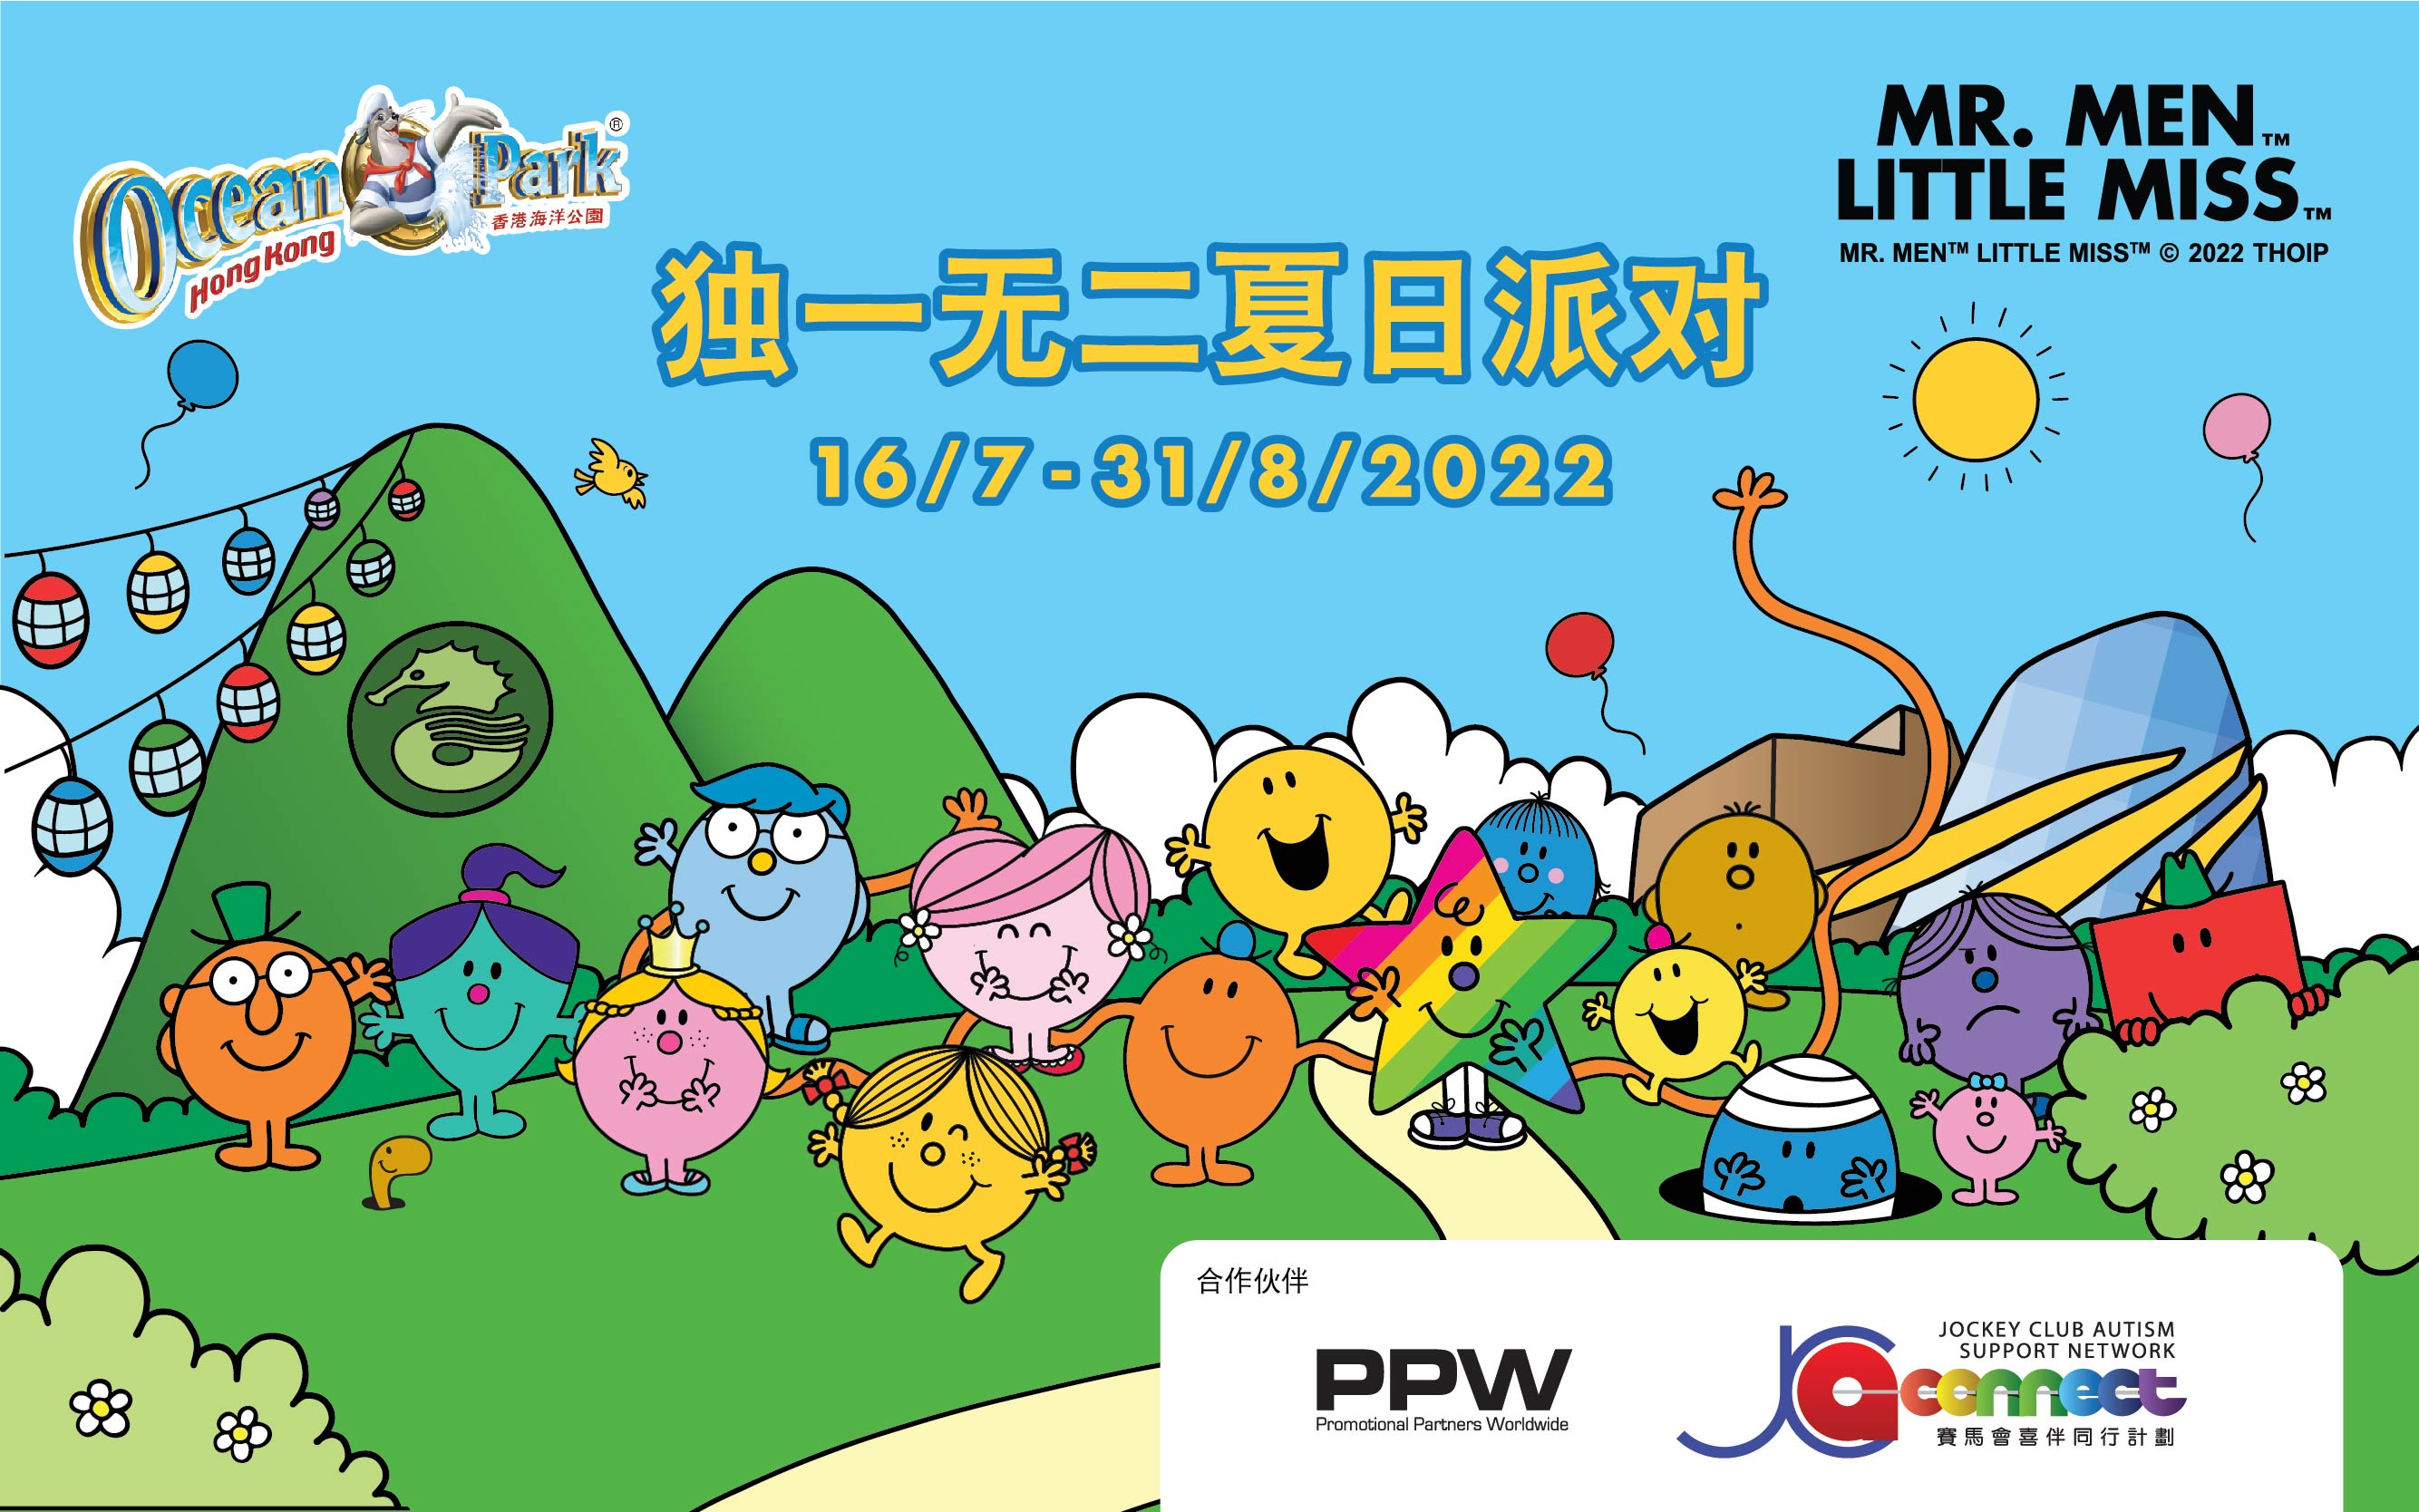 https://media.oceanpark.com.hk/files/s3fs-public/summer-event-inner-banner-mobile-sc.jpg